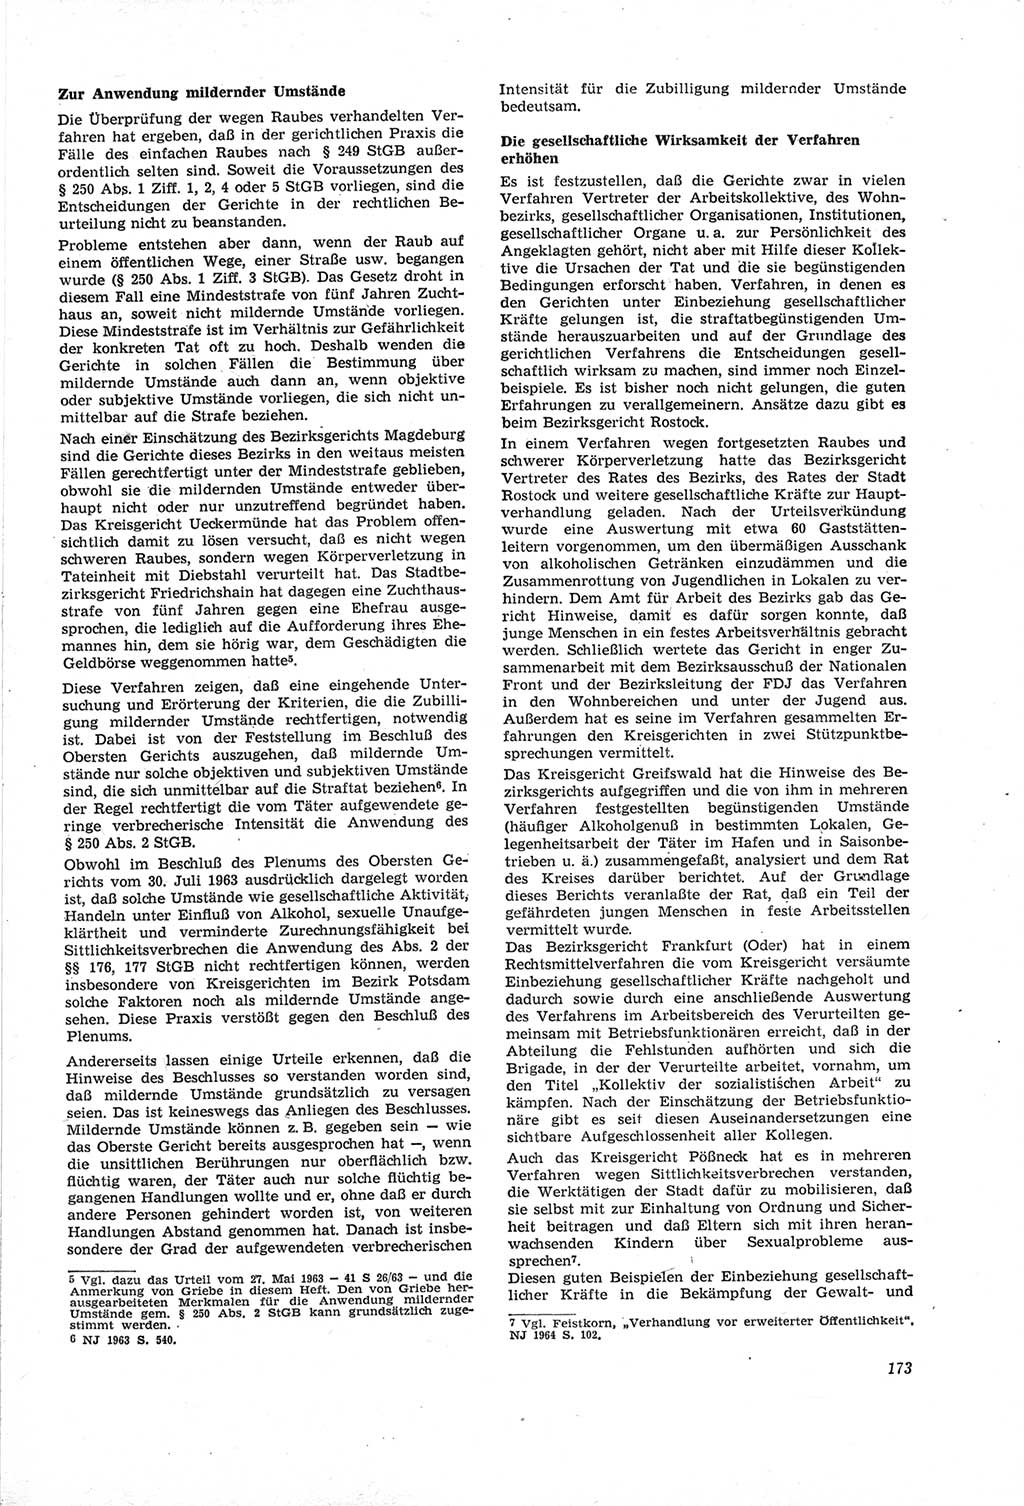 Neue Justiz (NJ), Zeitschrift für Recht und Rechtswissenschaft [Deutsche Demokratische Republik (DDR)], 18. Jahrgang 1964, Seite 173 (NJ DDR 1964, S. 173)